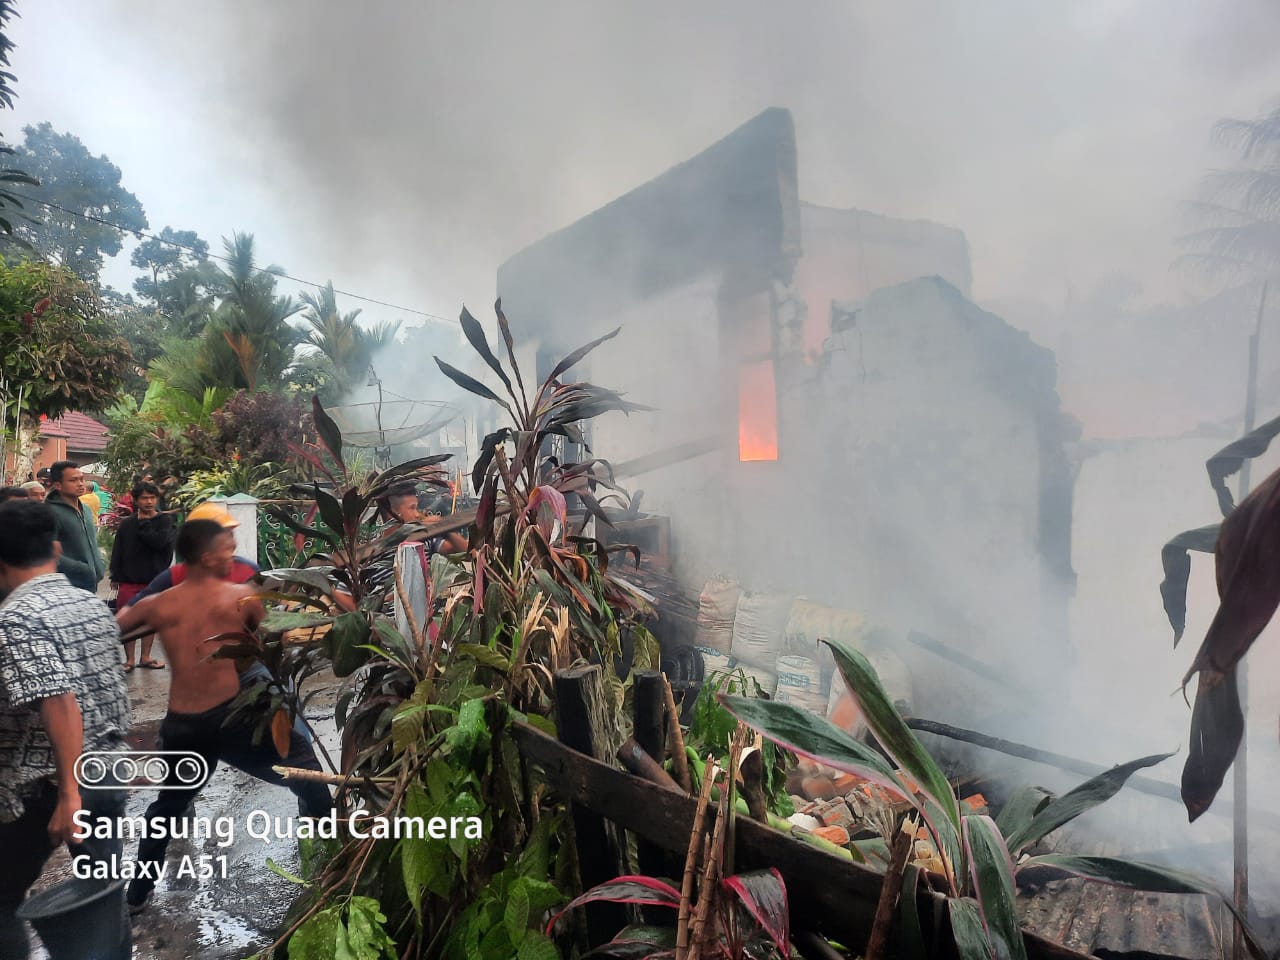 Kebakaran Rumah Warga Di Desa Kampung Baru Timur, Ditaksir Alami Kerugian Ratusan Juta Rupiah